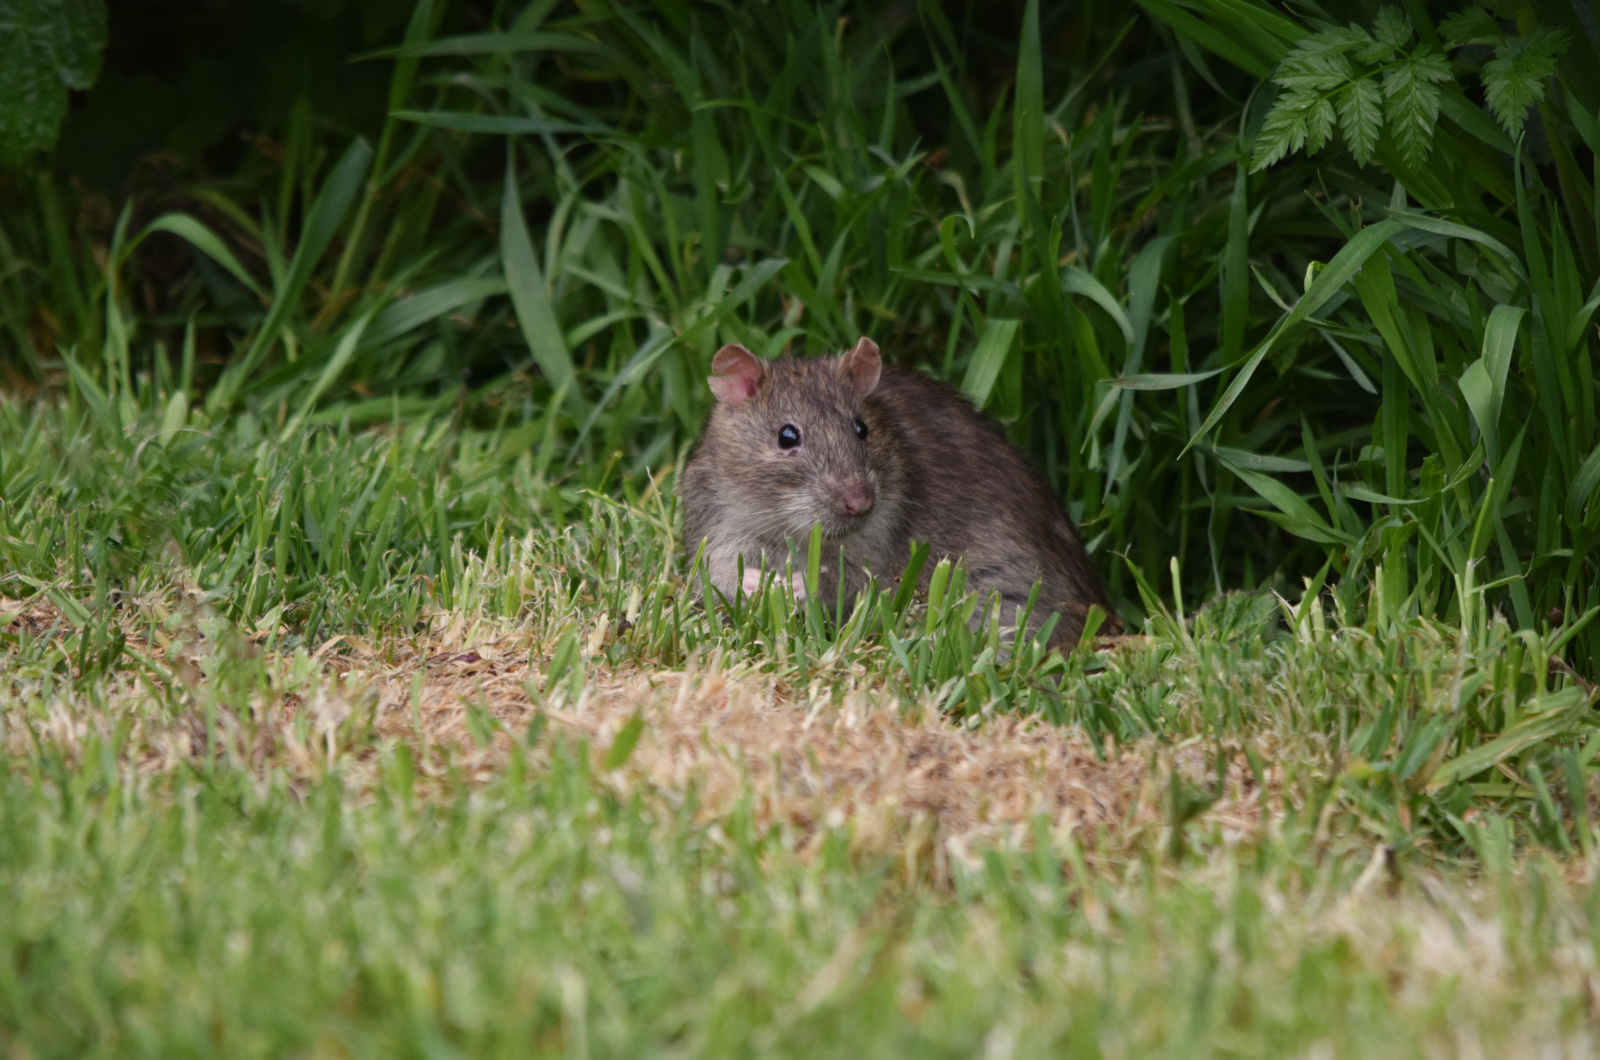 Wild brown rat in a garden